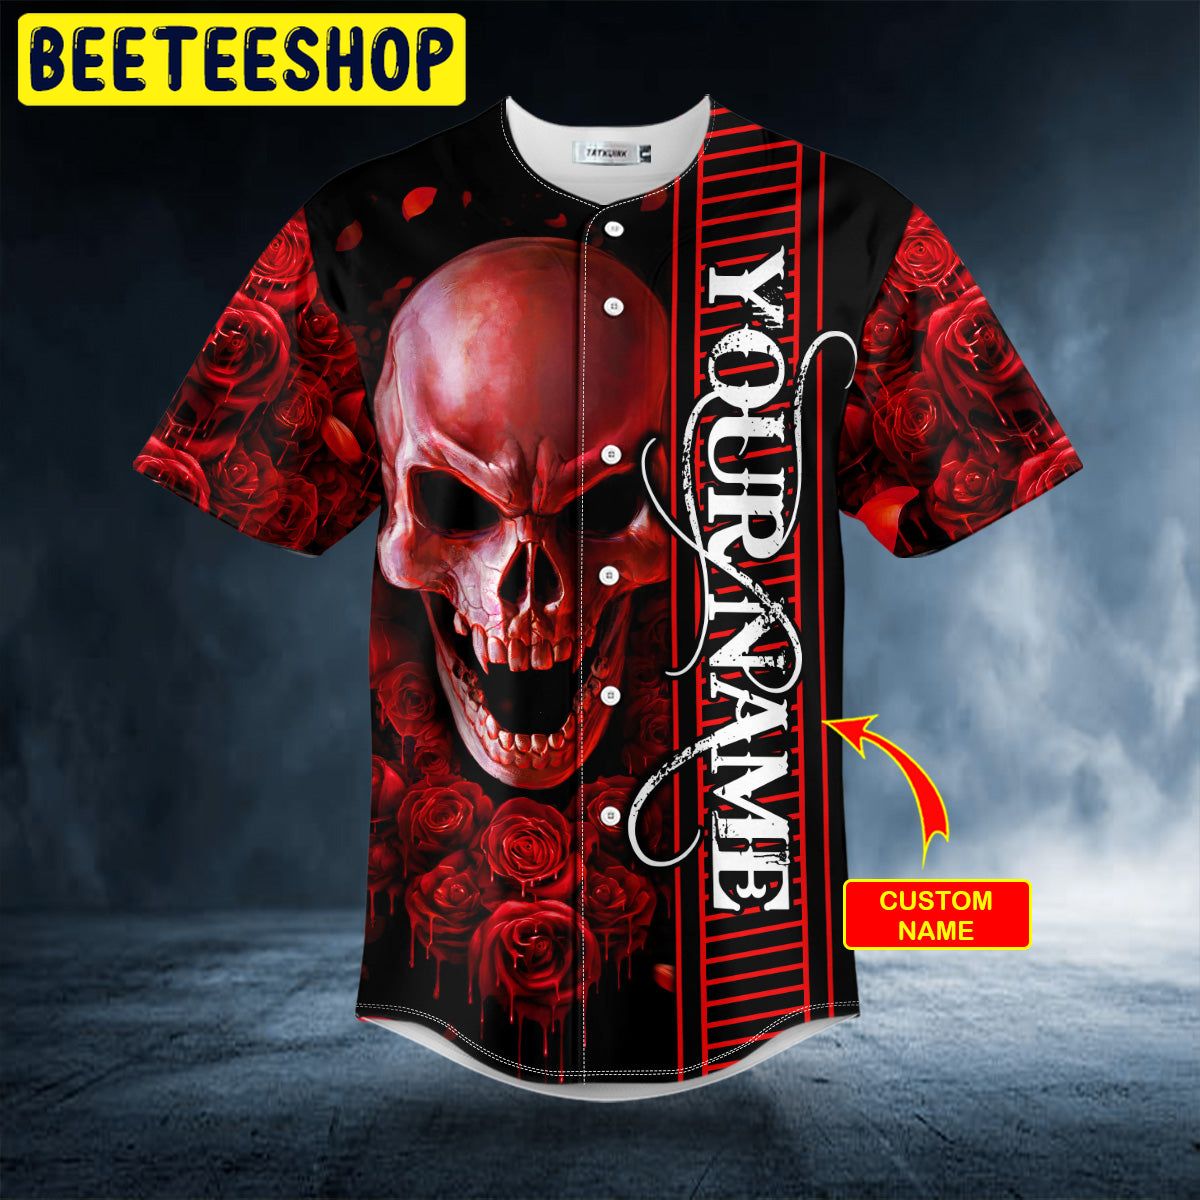 Custom Name Red 3 Heads Skeletons Skull Baseball Jersey For Men And Women  Gift Halloween - Banantees